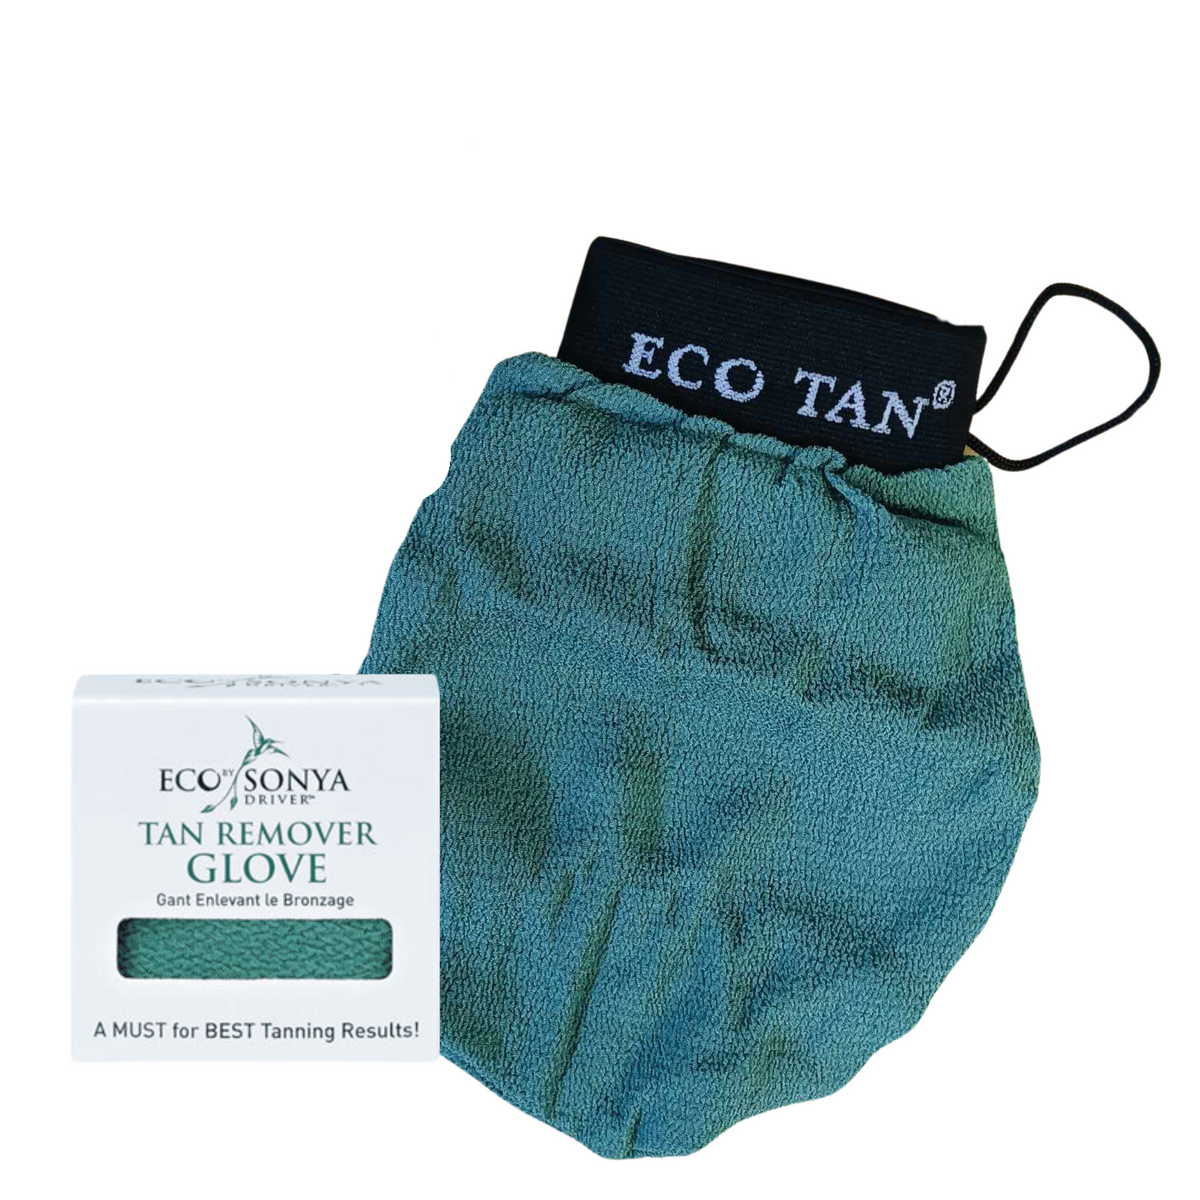 Eco Tan - Tan Remover Glove